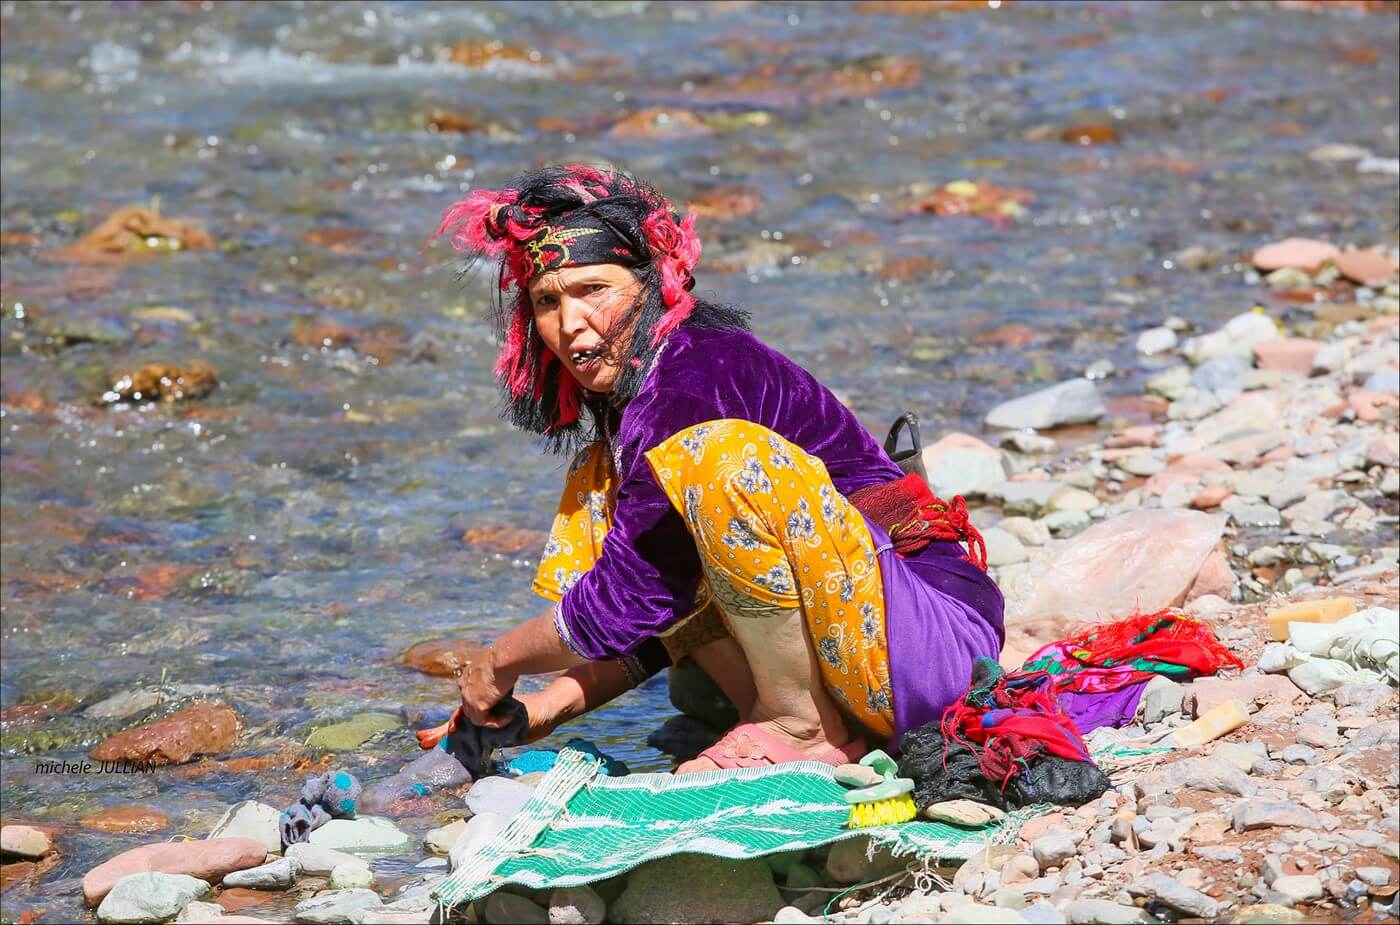 femme berbère lavant son linge dans une rivière au maroc